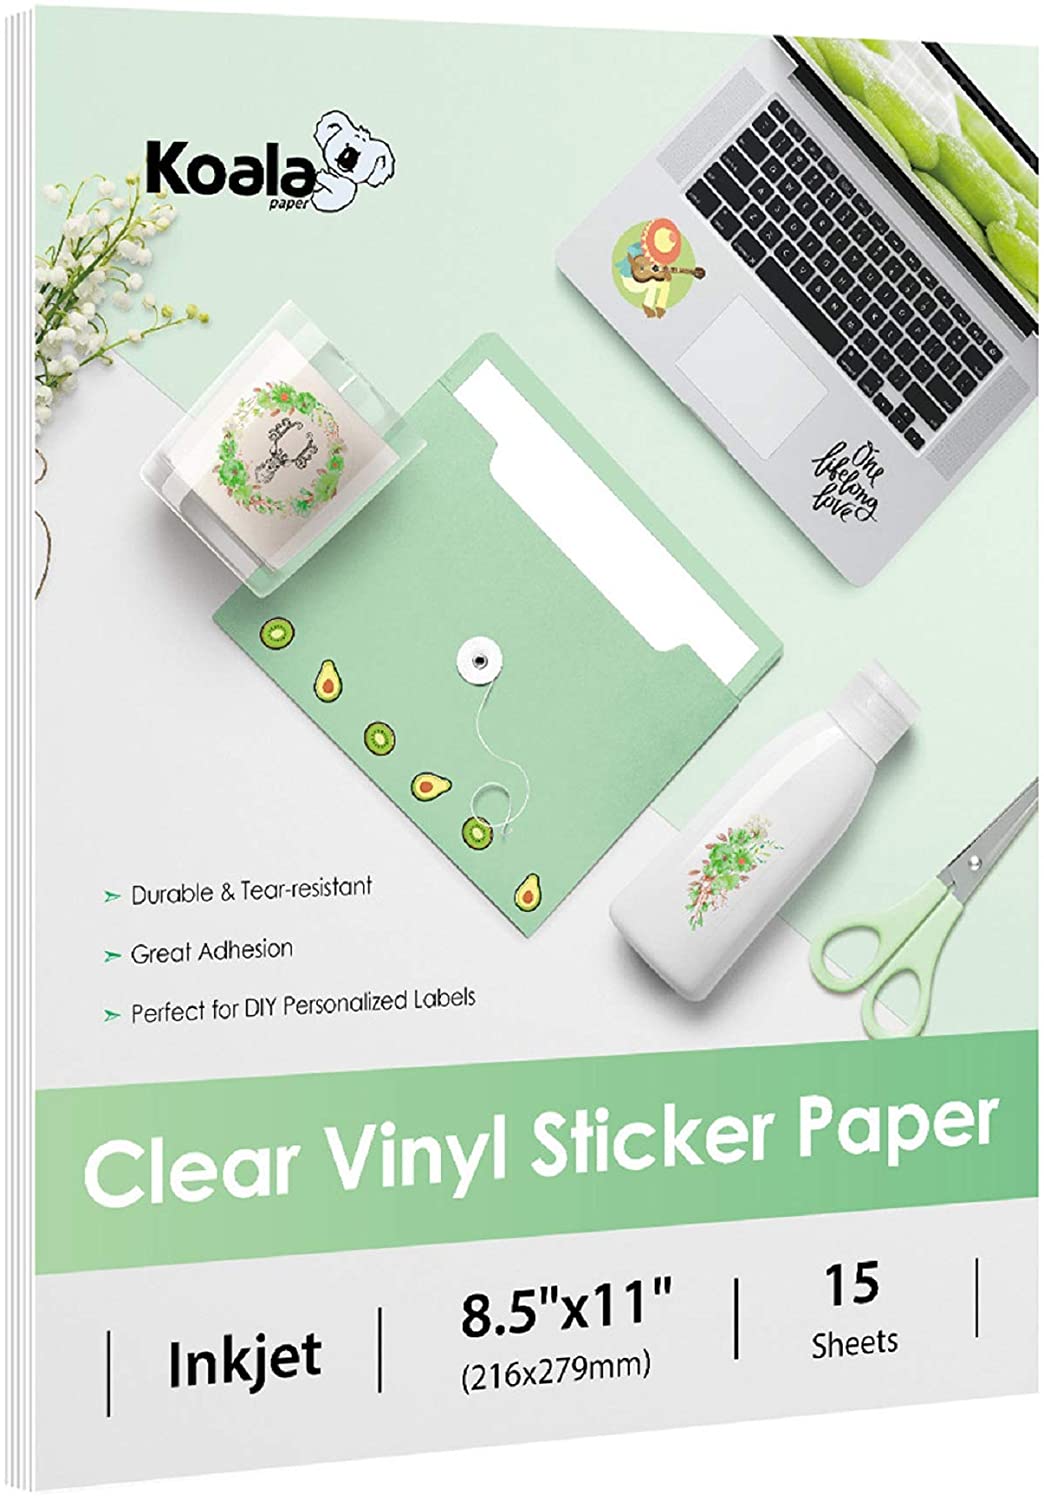 Koala Clear Sticker Paper for Inkjet Printer - Waterproof